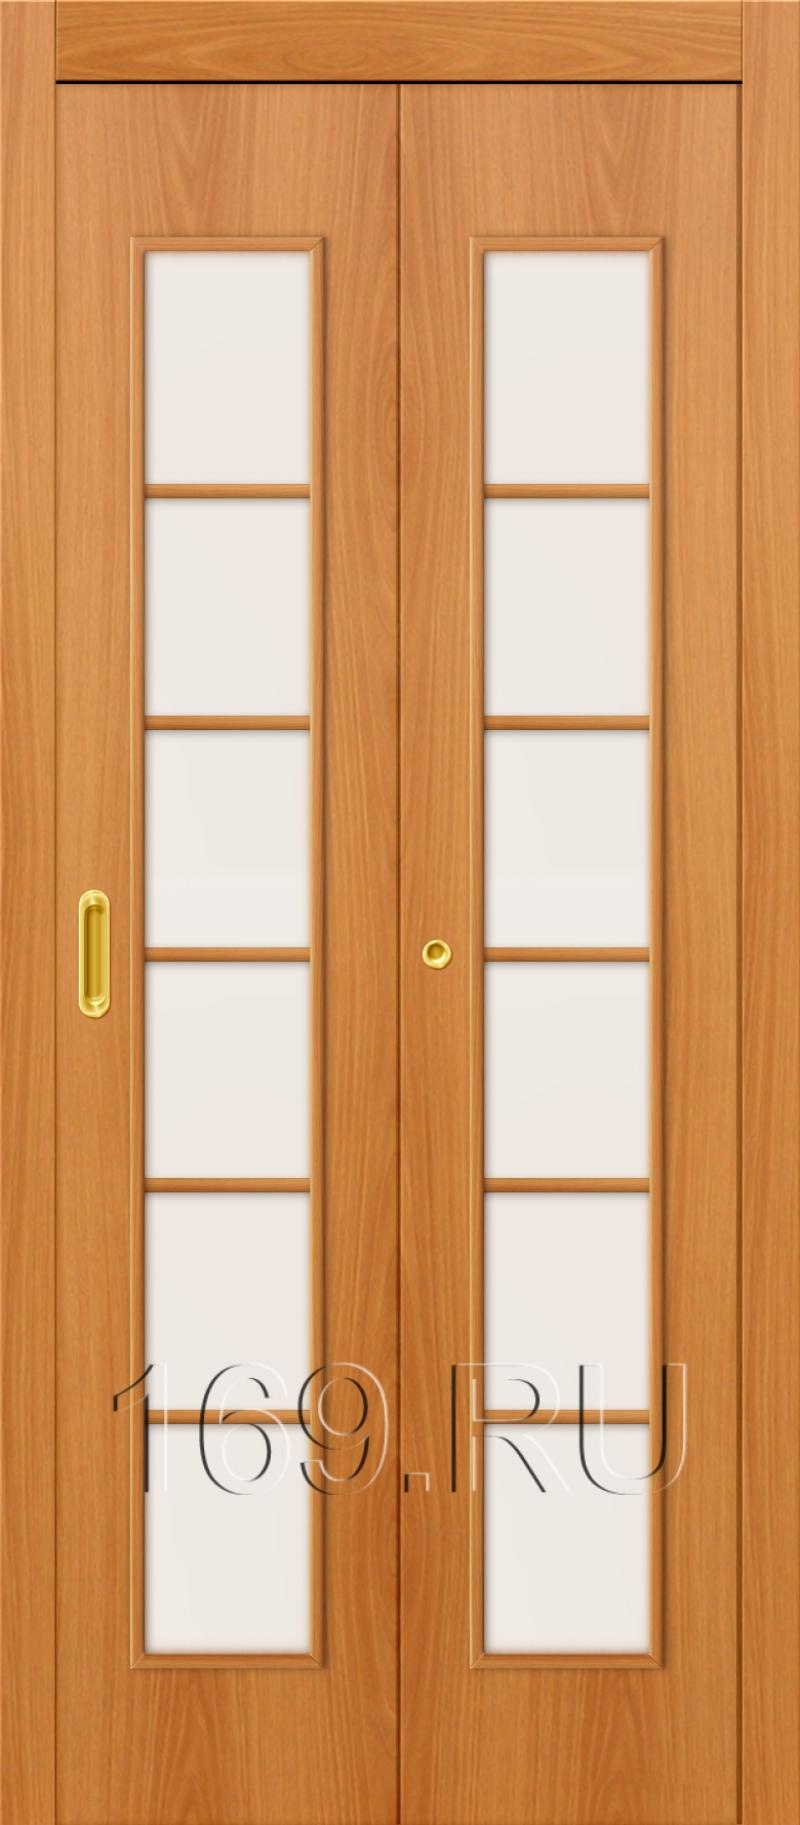 Межкомнатные двери гармошки: Раздвижные межкомнатные двери гармошка от производителя